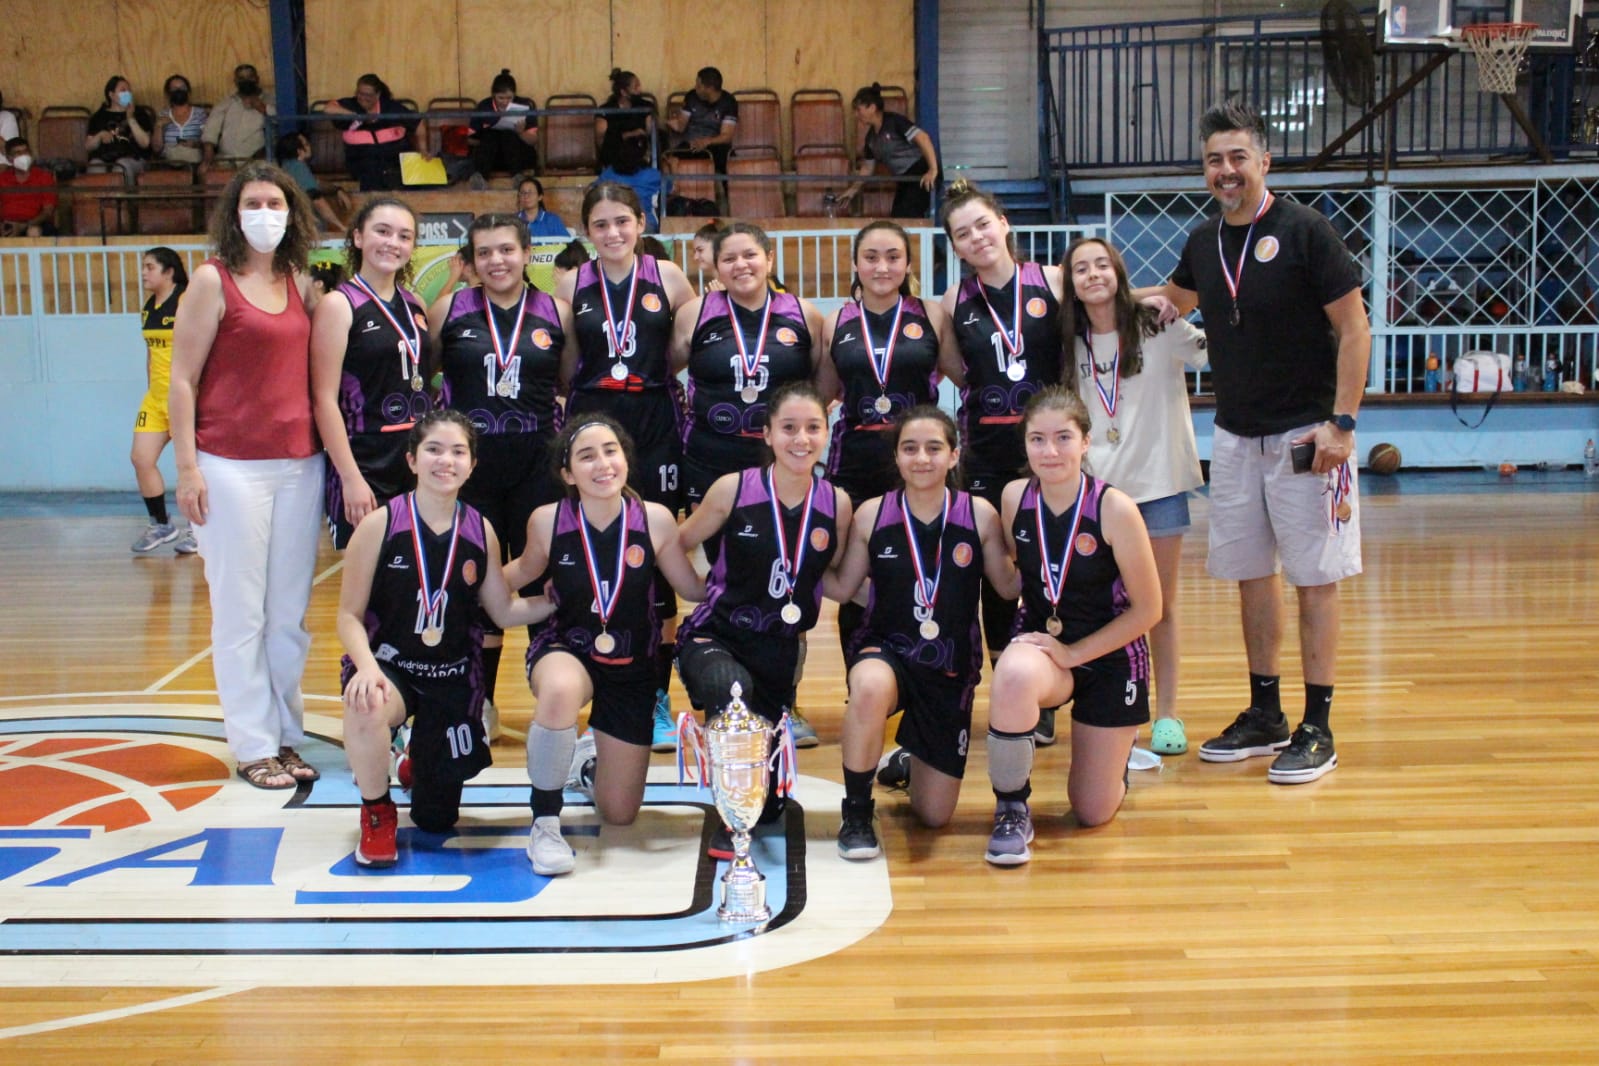 DEPORTE: Aconcagua Basket obtiene el Primer lugar de la Copa de Plata